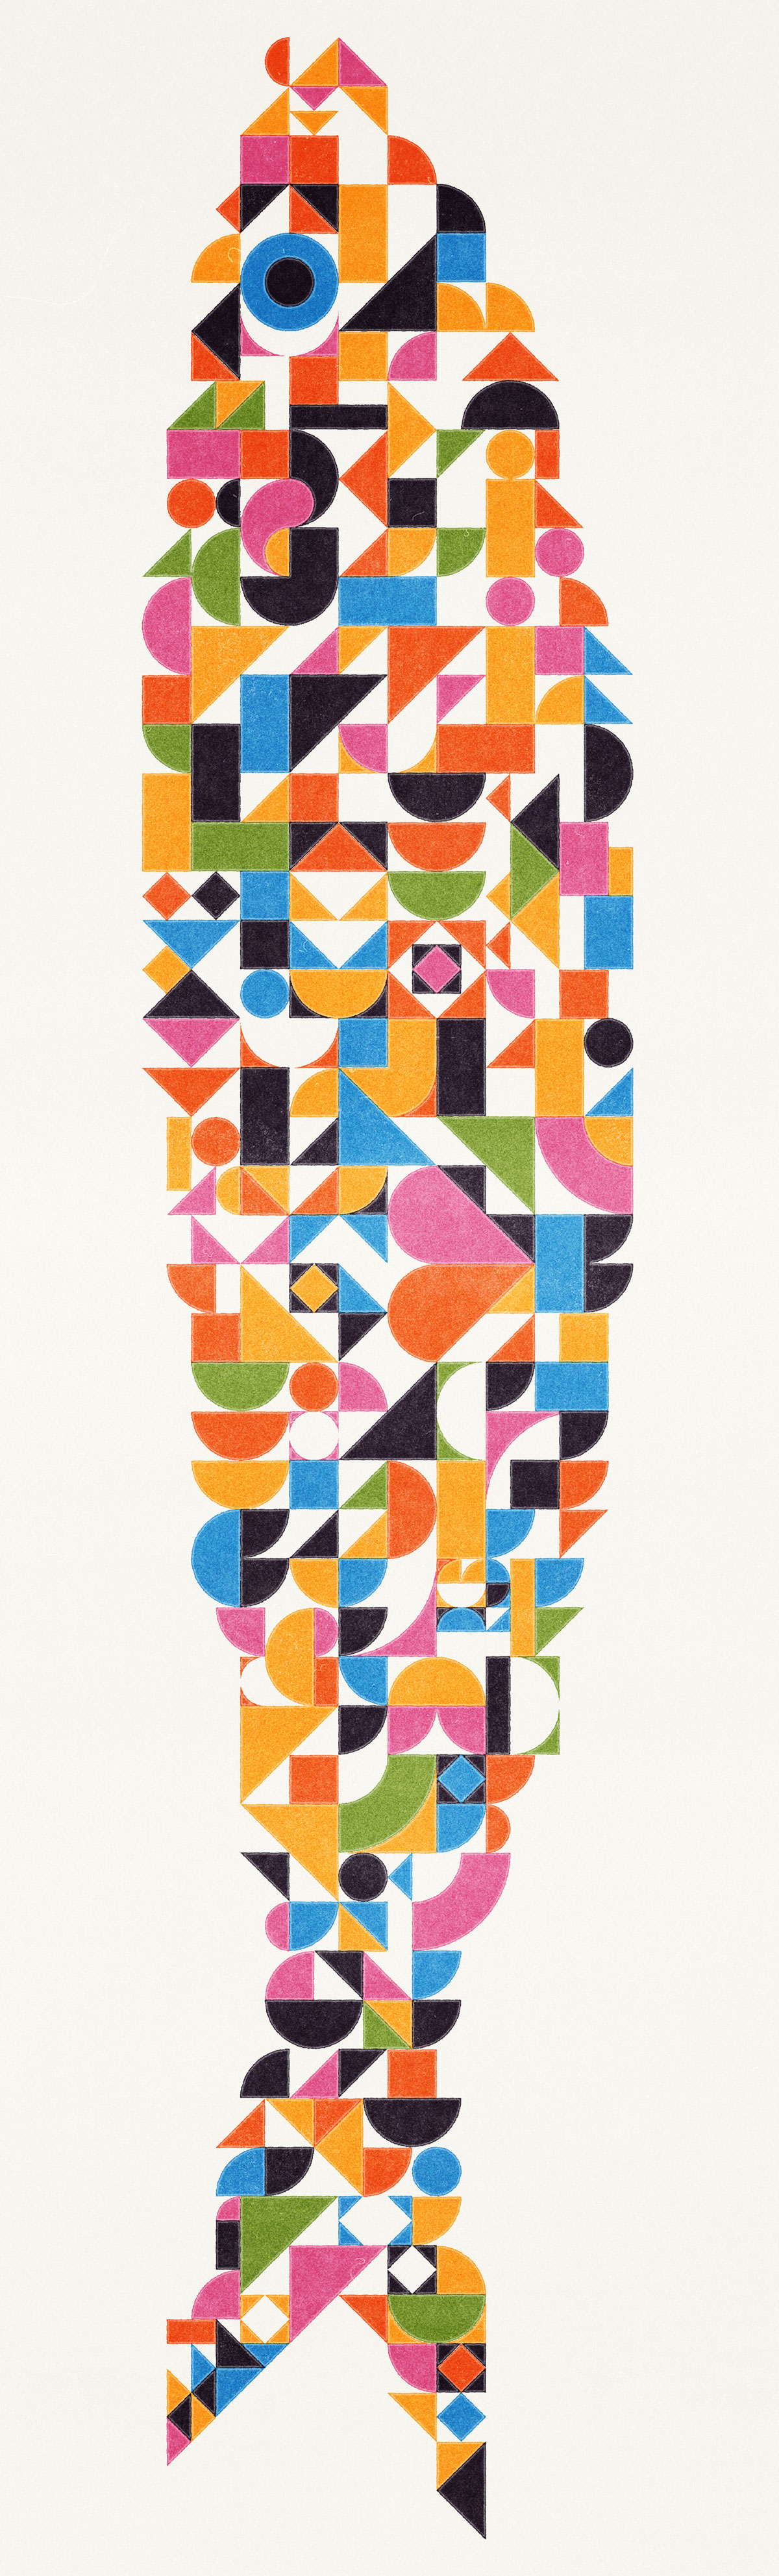 Ricardo Santos geometric diversity sardine 2019 illustration